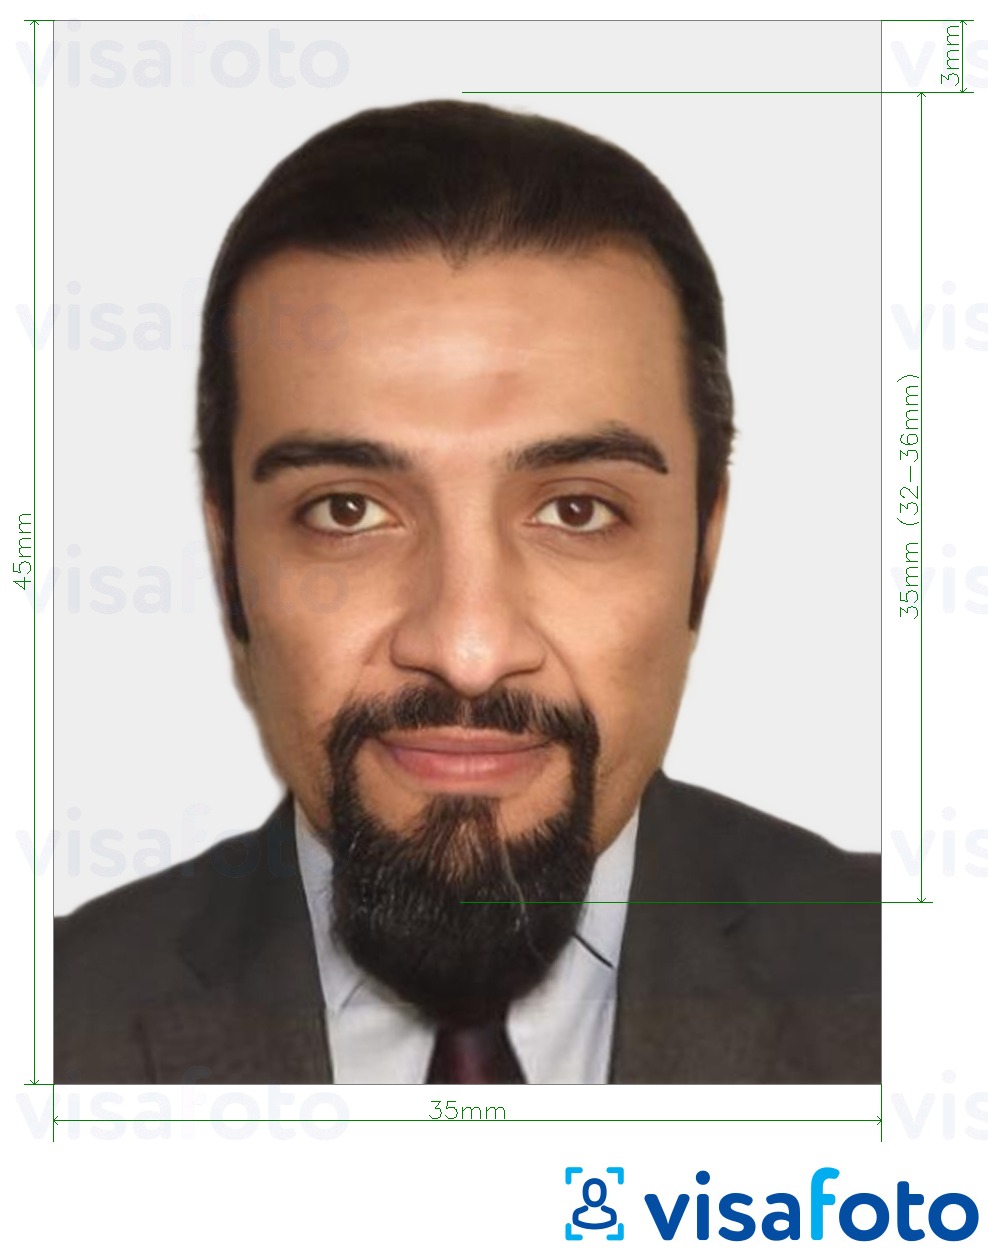 Contoh foto untuk Visa Maghribi 35x45 mm (3.5x4.5 cm) dengan spesifikasi saiz yang tepat.